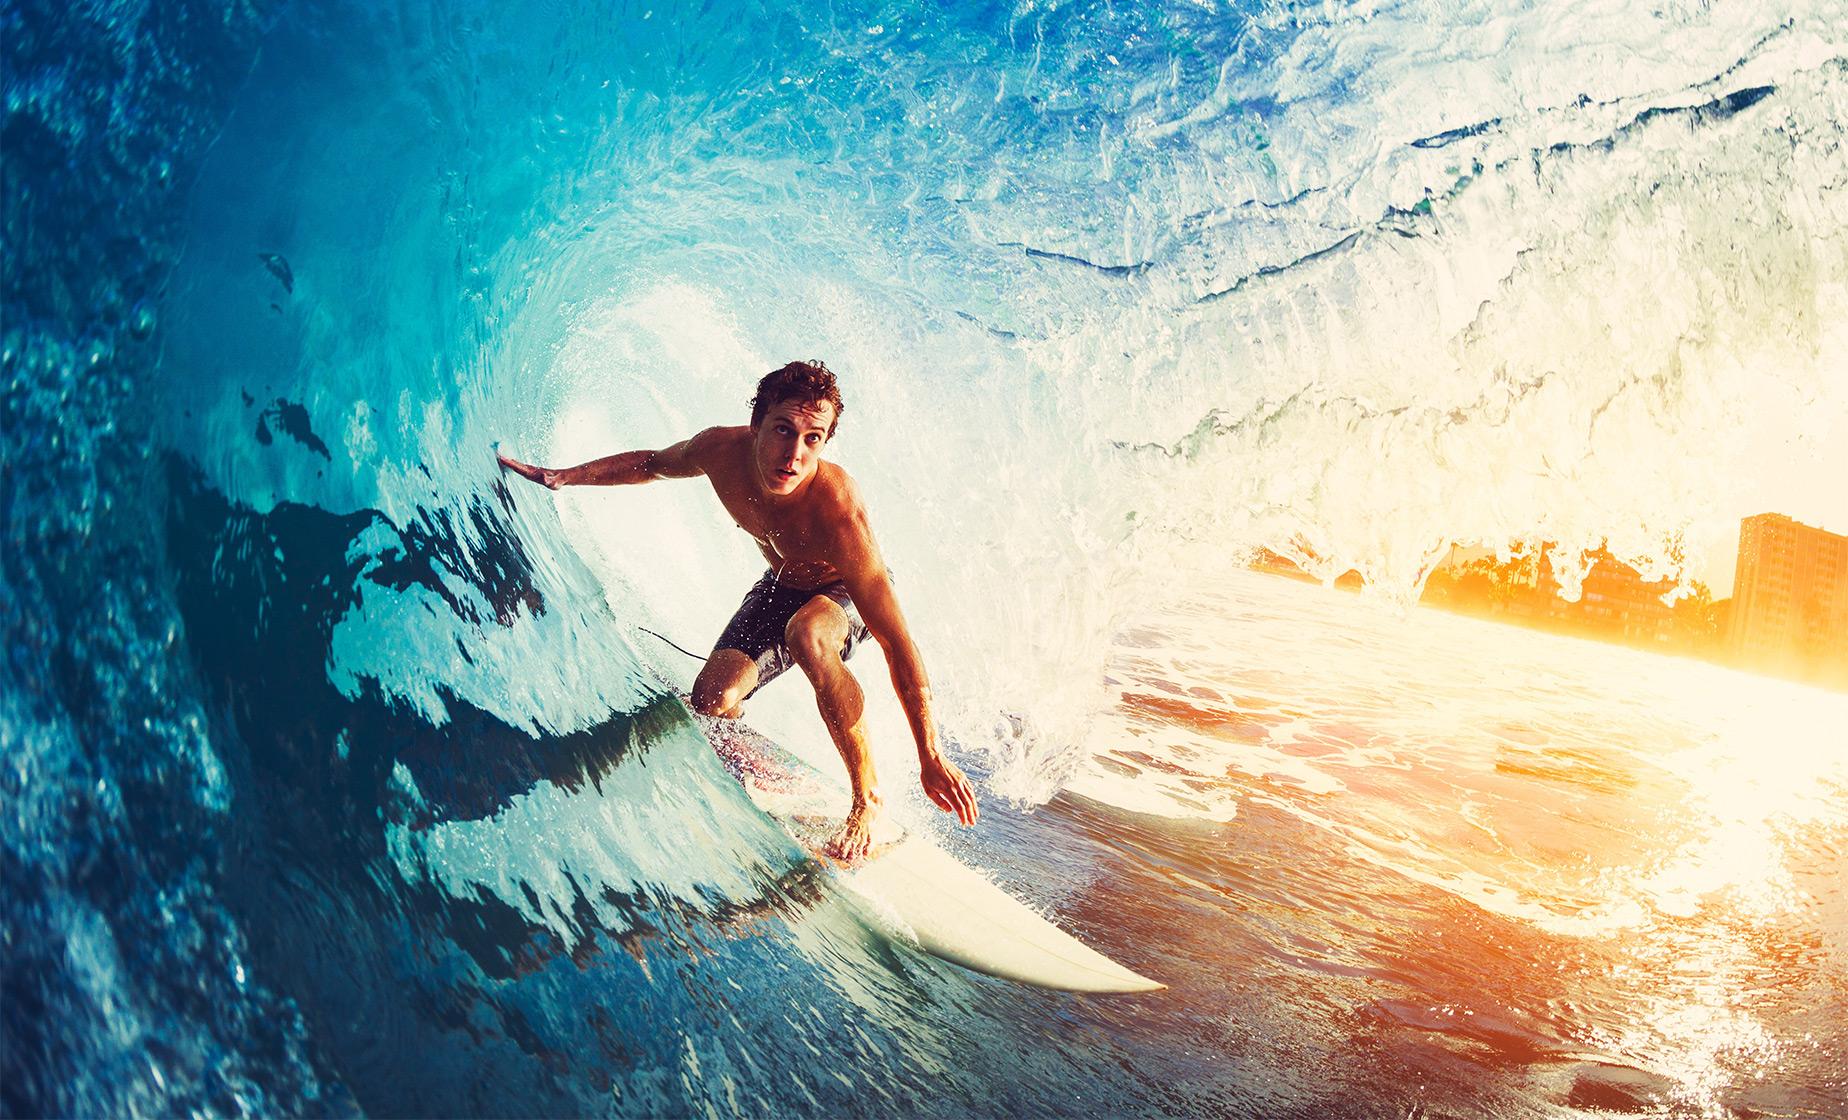 Surfer inside a big wave